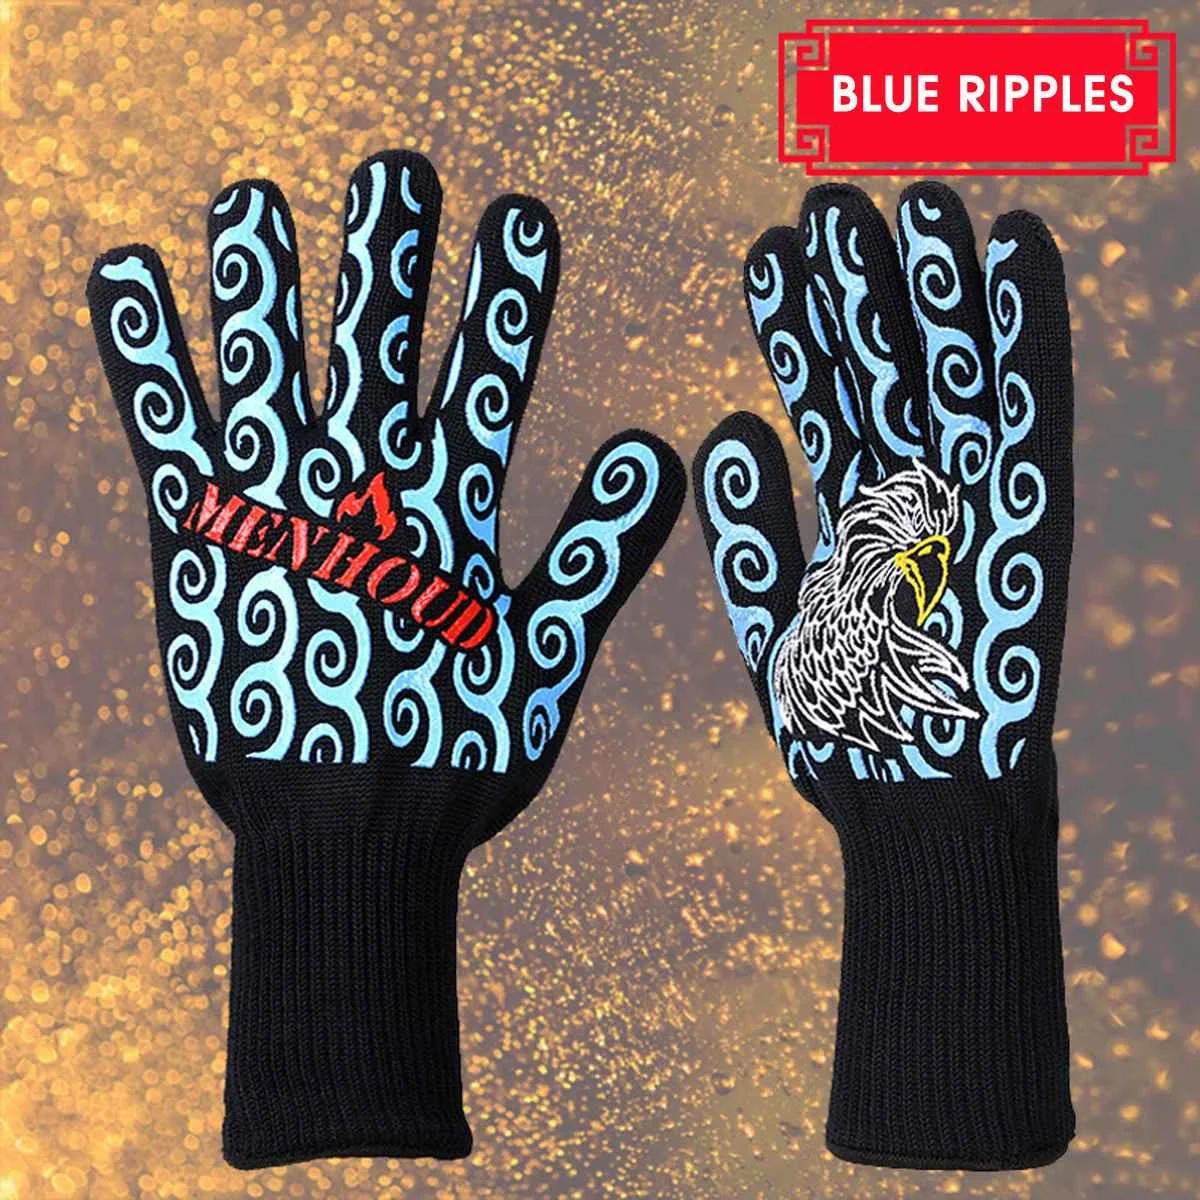 4 цвета силиконовые экстремальные термостойкие высокотемпературные Цельсия огнестойкие перчатки для микроволновой печи барбекю перчатка для готовки на гриле - Цвет: blue ripples